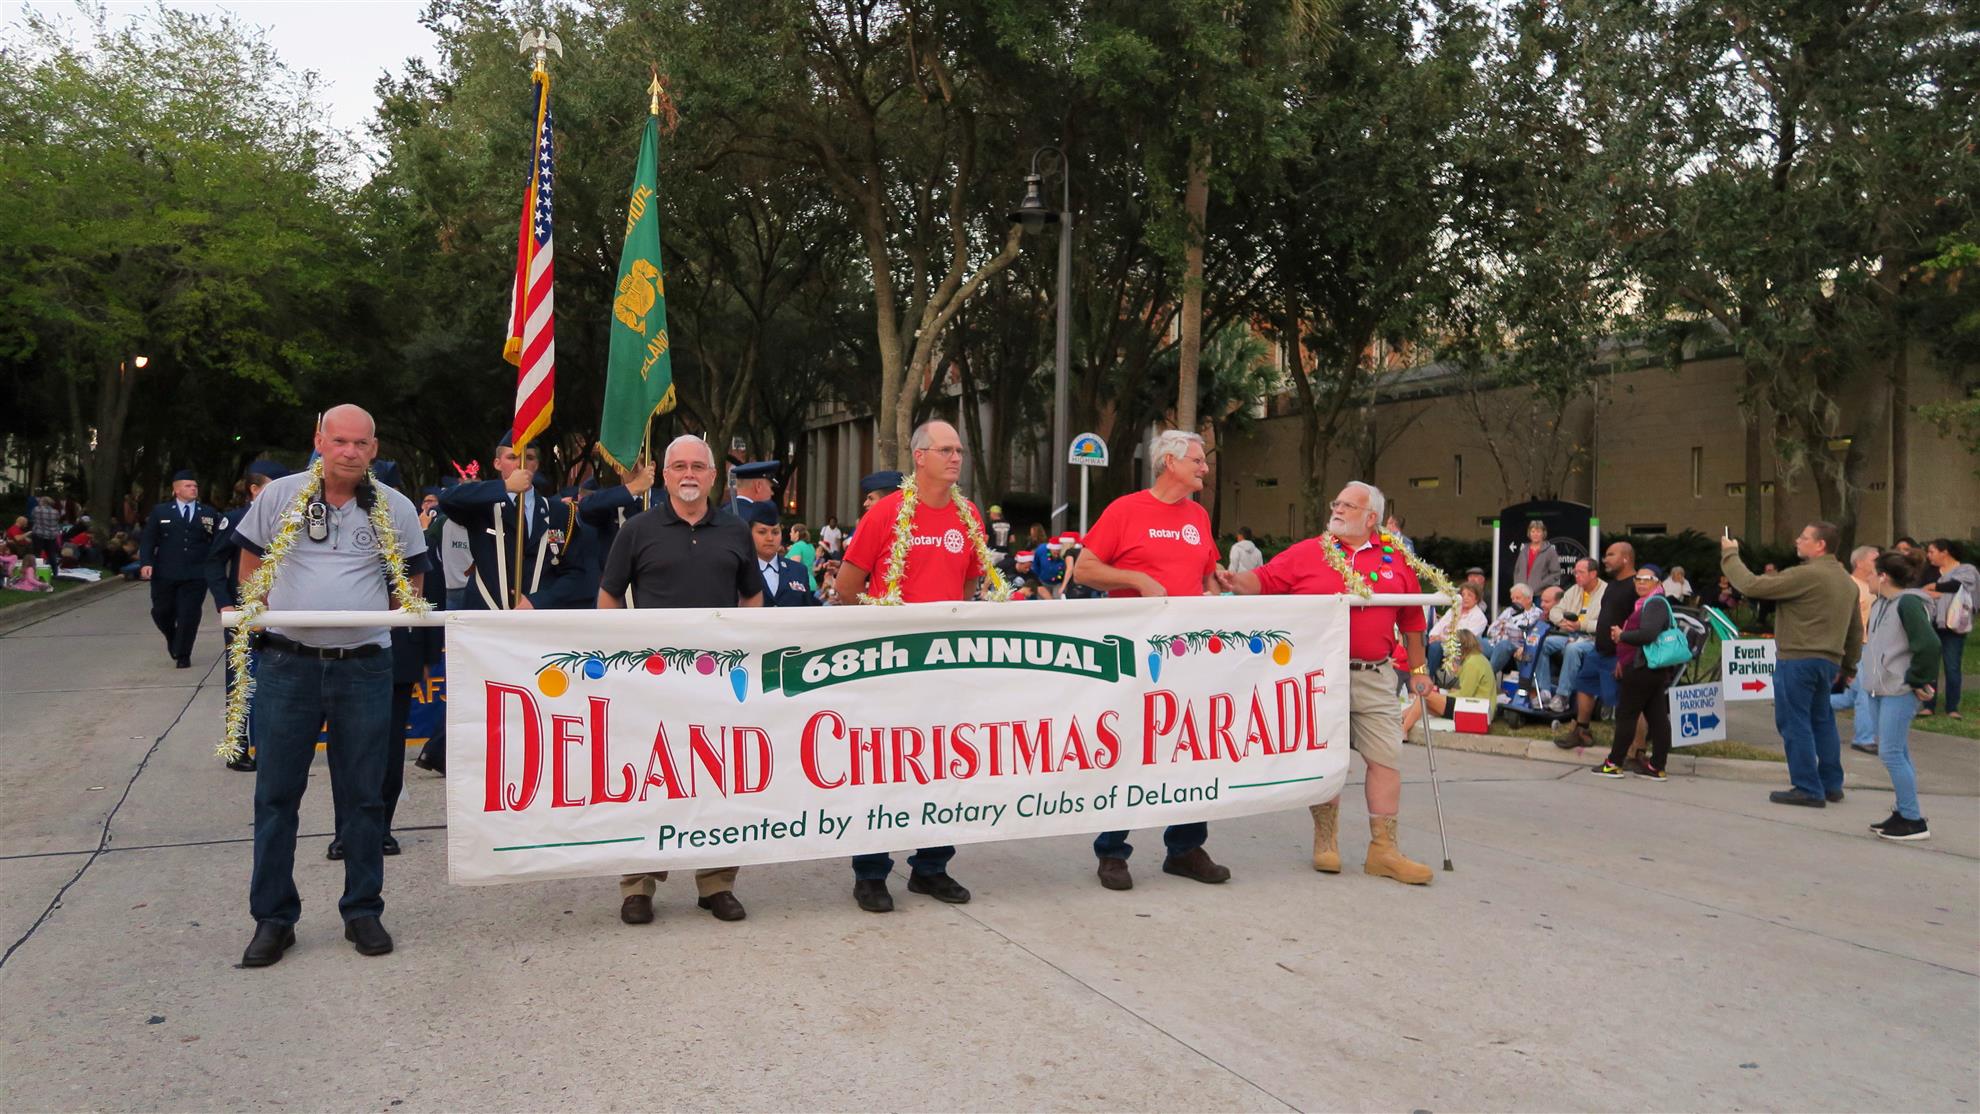 deland christmas parade 2020 Deland Christmas Parade Rotary Club Of Deland deland christmas parade 2020